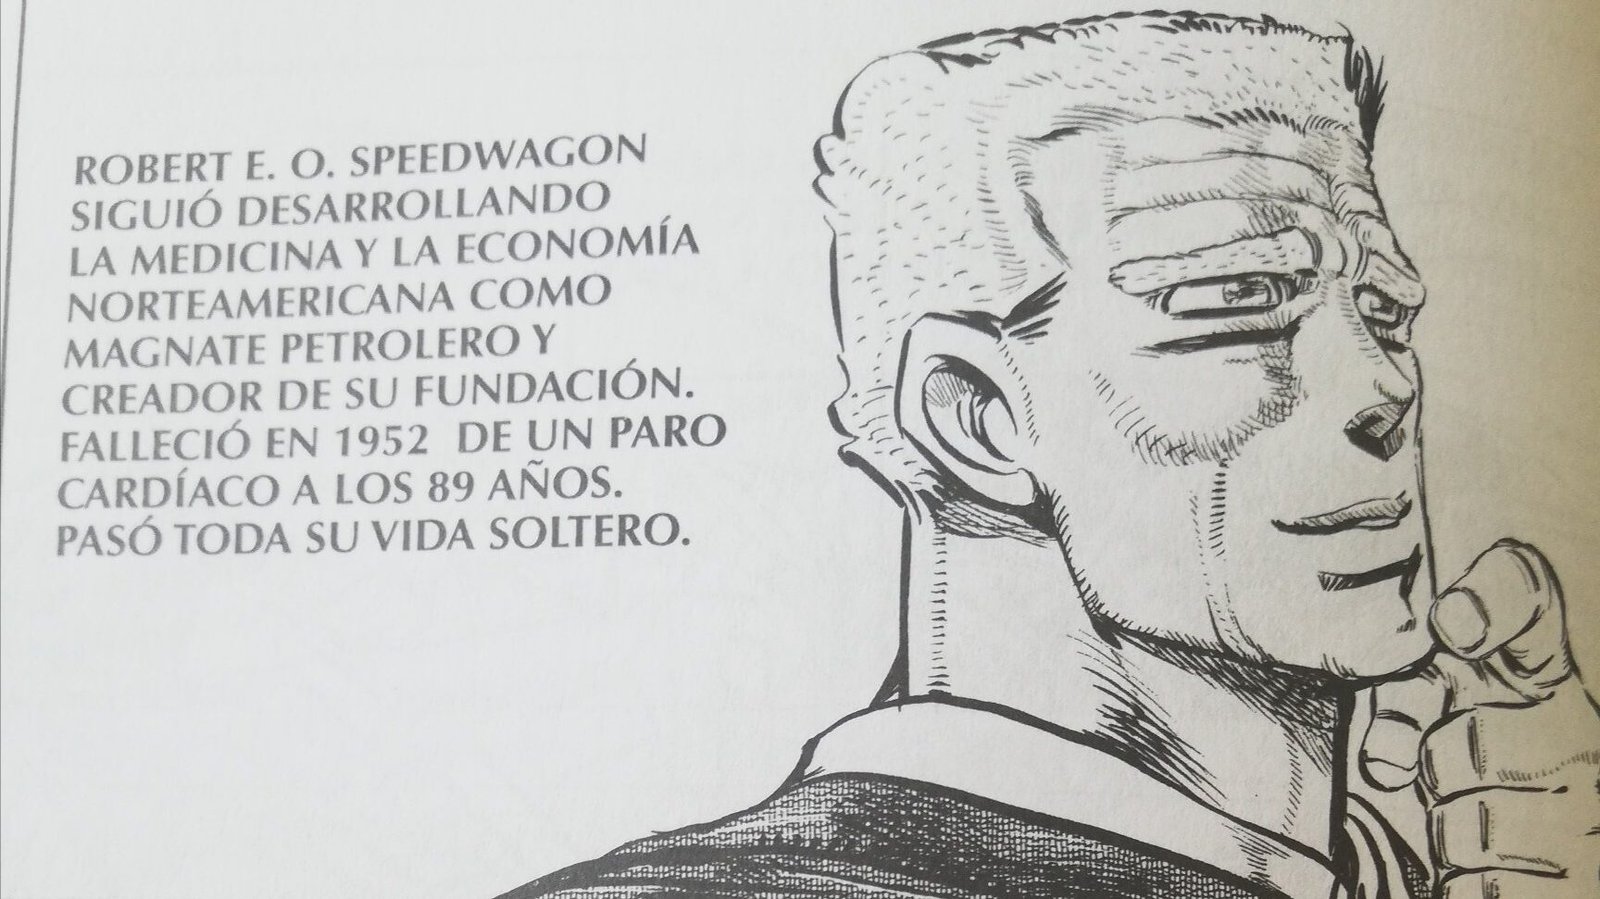 Muerte de Rorbert E. O. Speedwagon en el manga Jojo's Bizarre Adventure